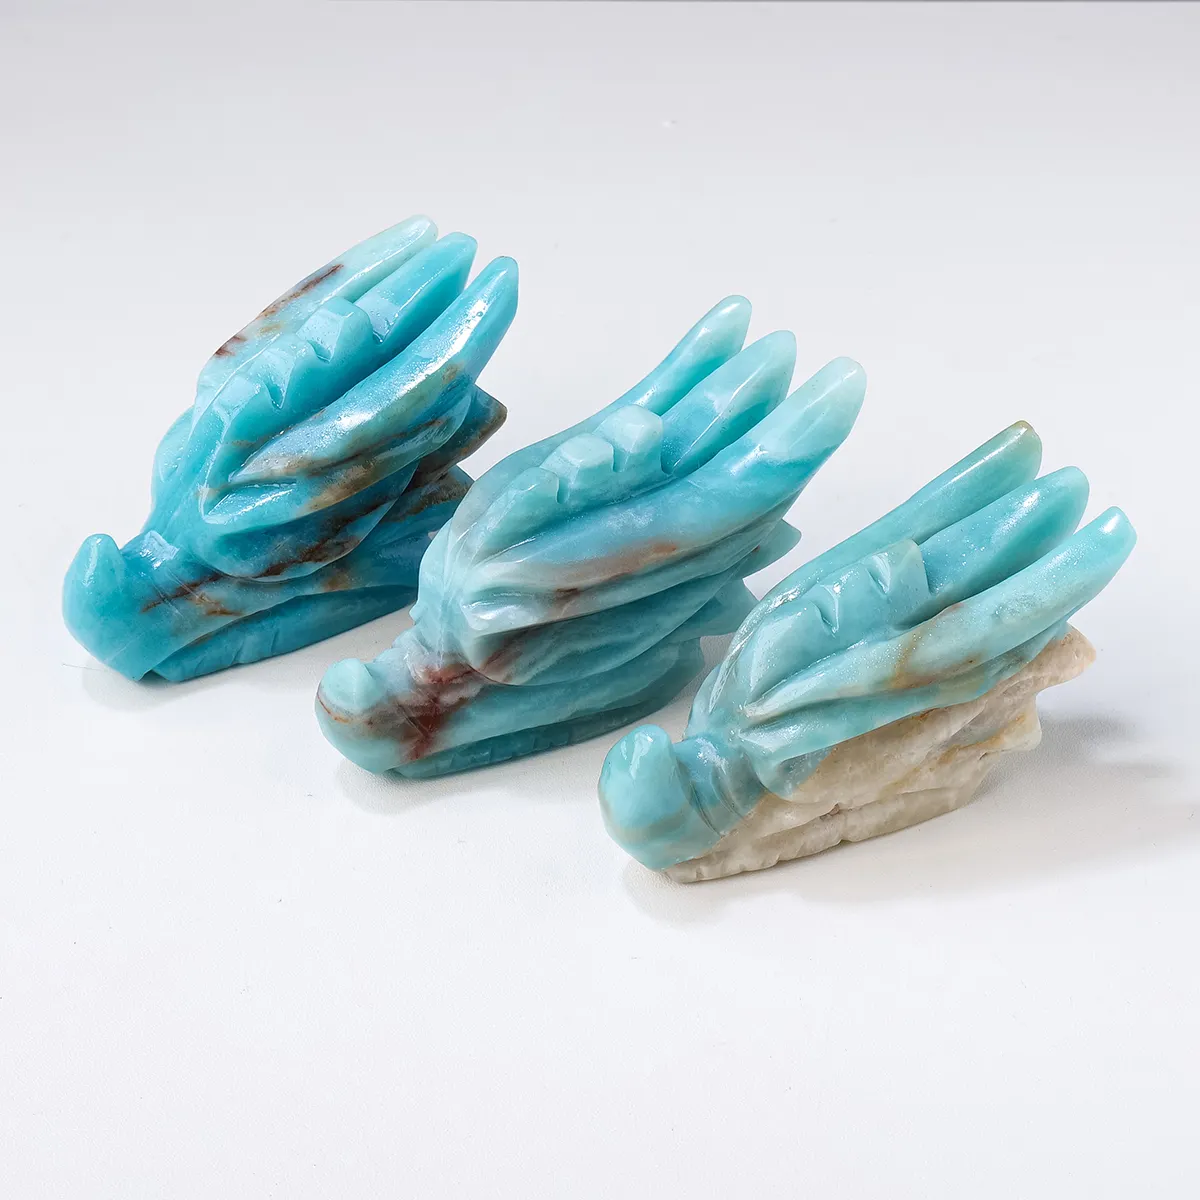 Artesanía de cristal natural de alta calidad, piedras preciosas hechas a mano, calaveras de dragón azul cielo para Decoración